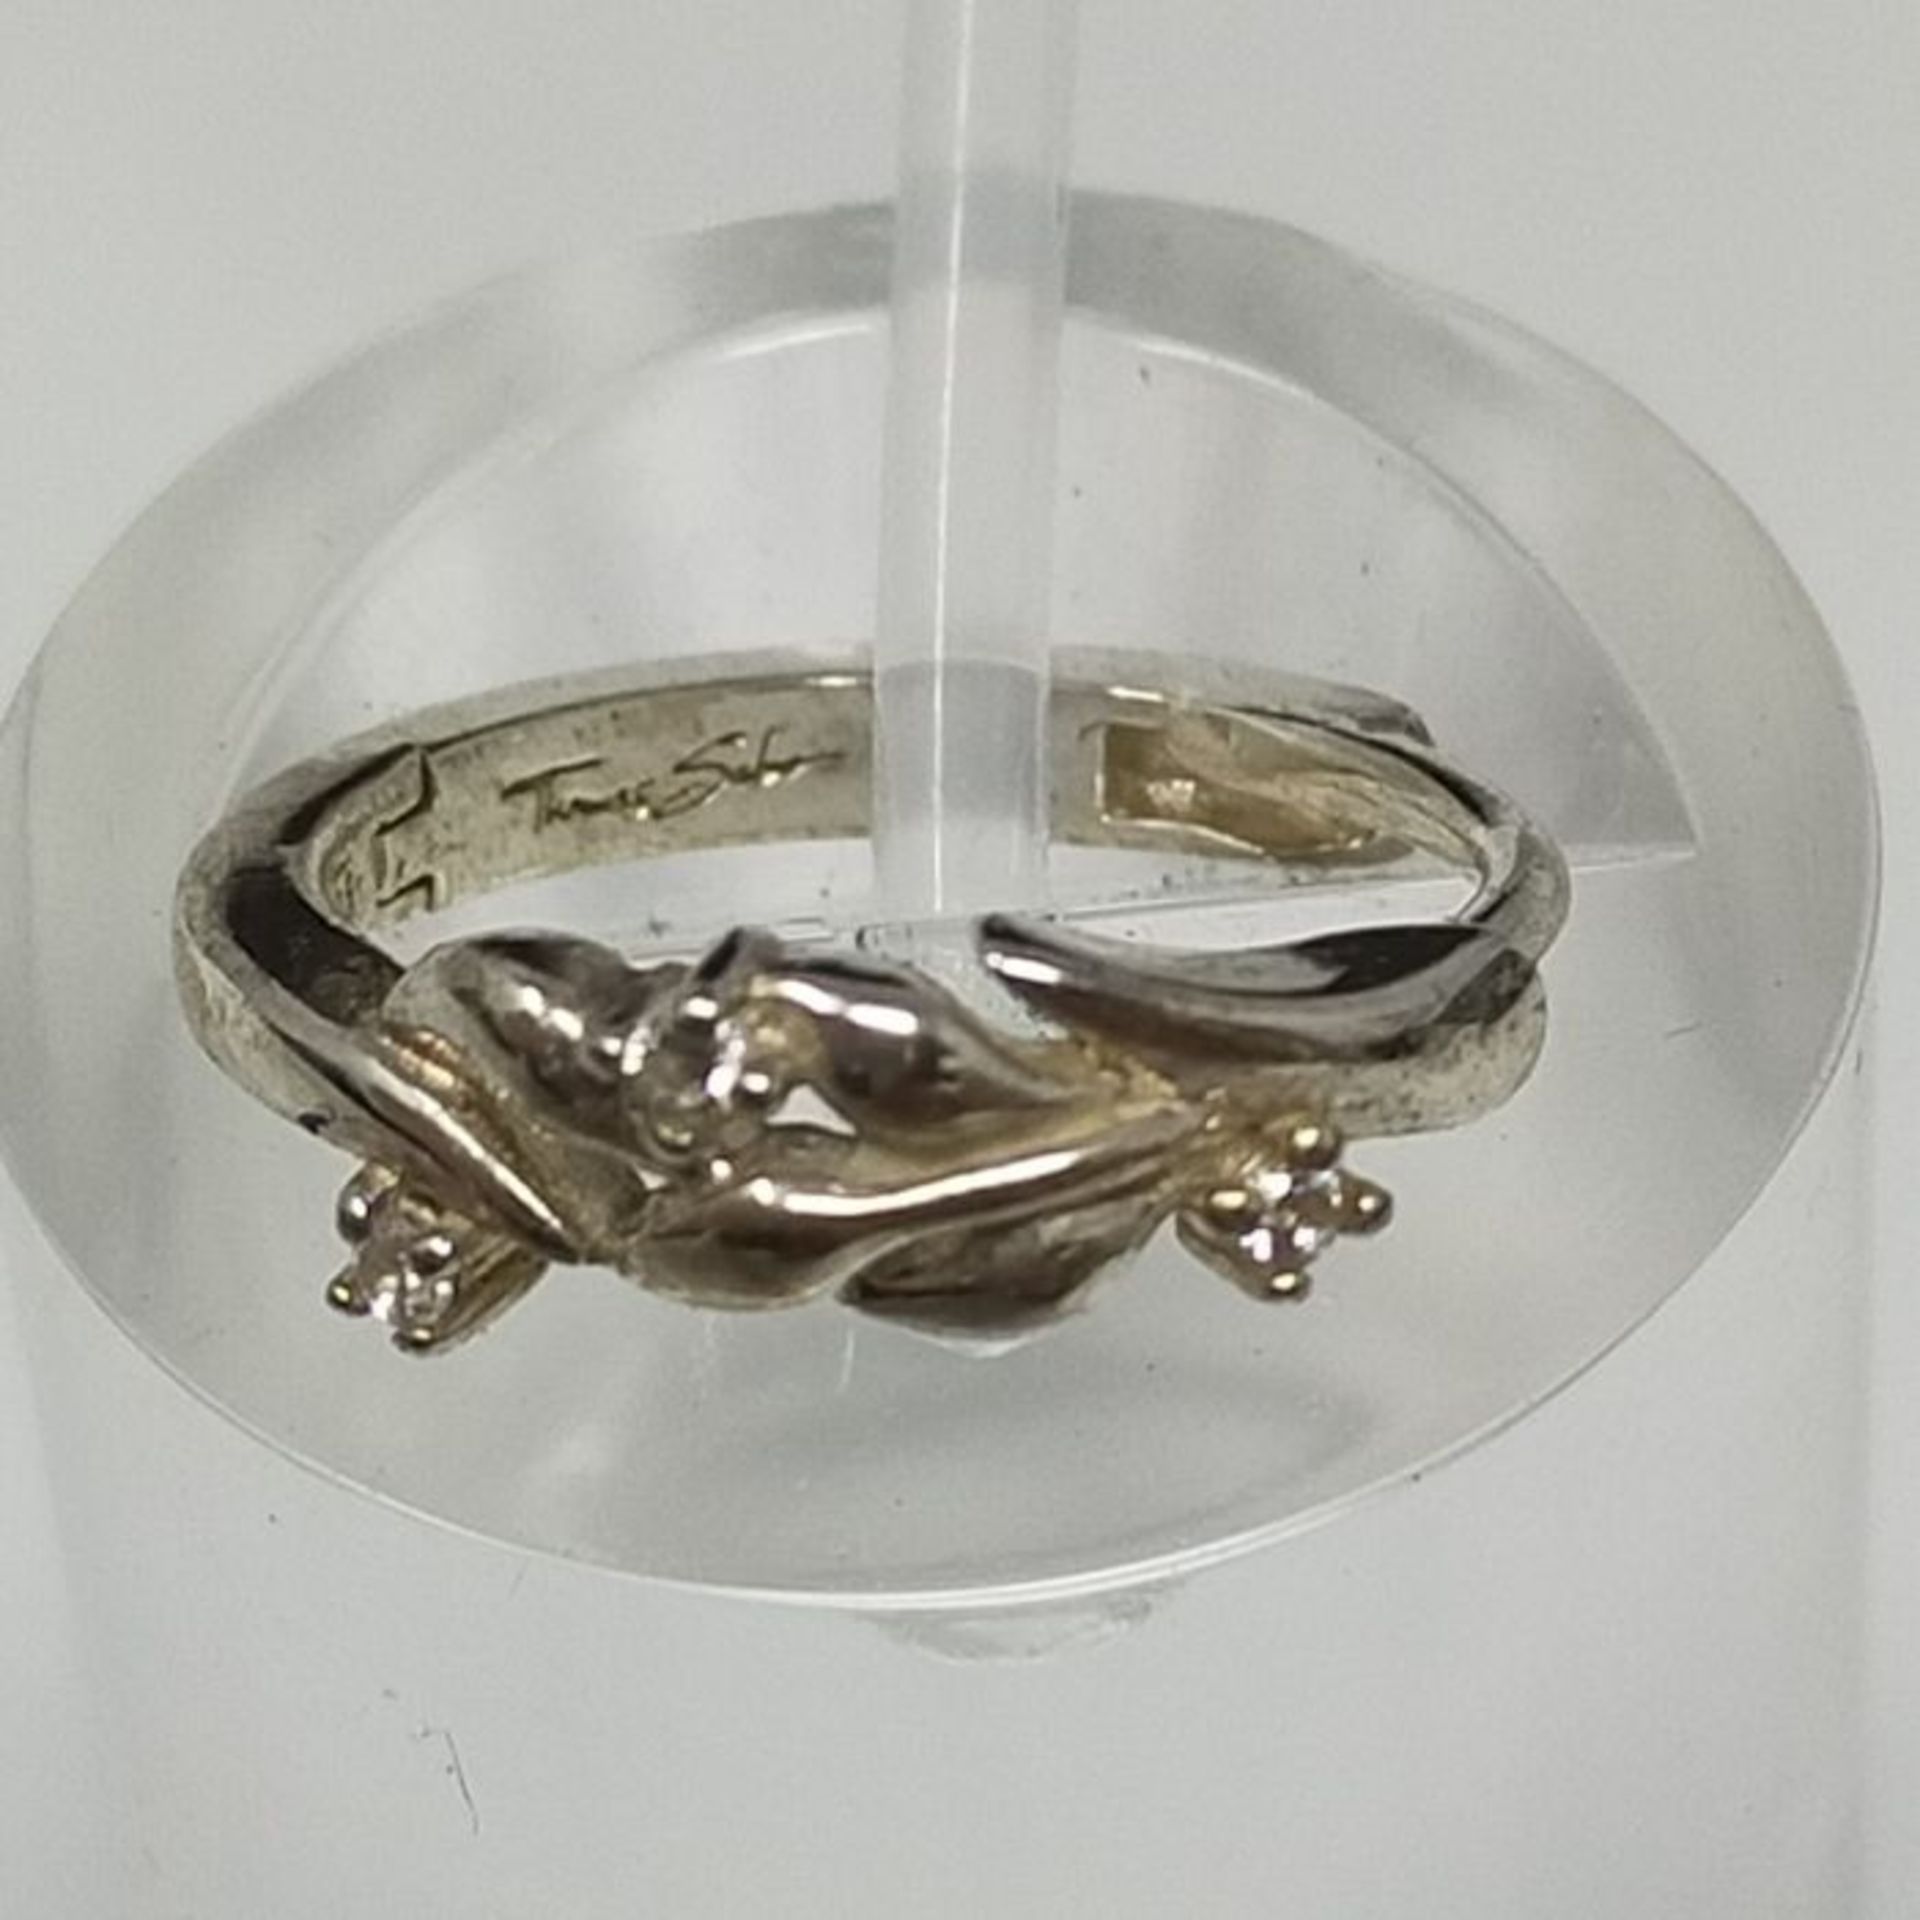 Thomas Sabo , Women s Sterling silver Cubic Zirconia Hoop Earrings, Silver, OneSize - Image 2 of 3